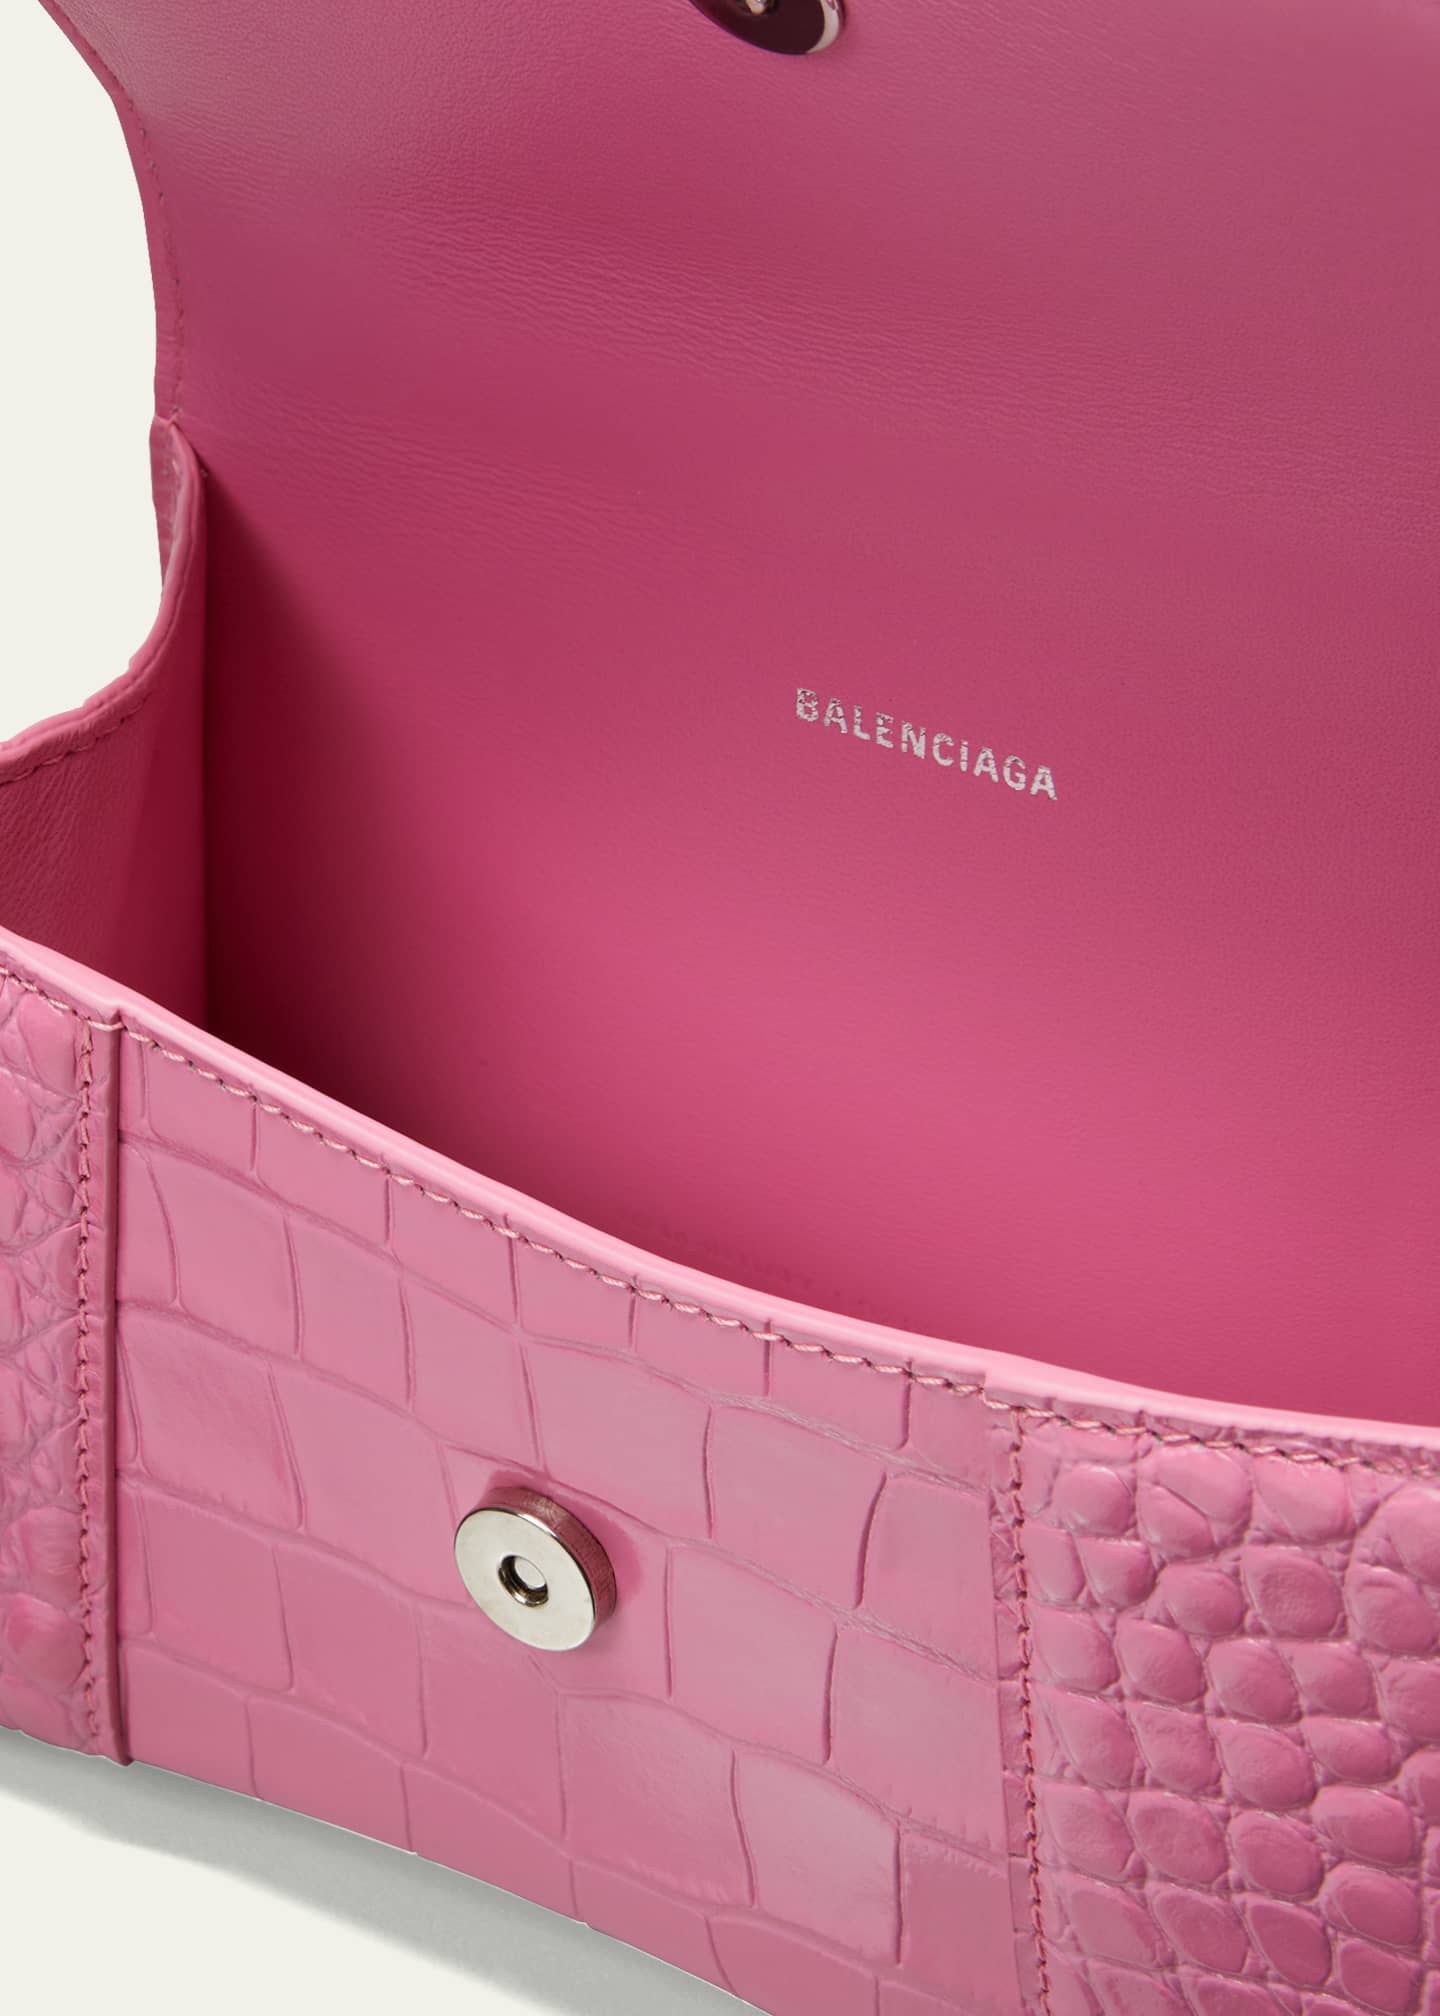 Balenciaga Hourglass XS Crocodile-Embossed Top-Handle Bag - Bergdorf ...